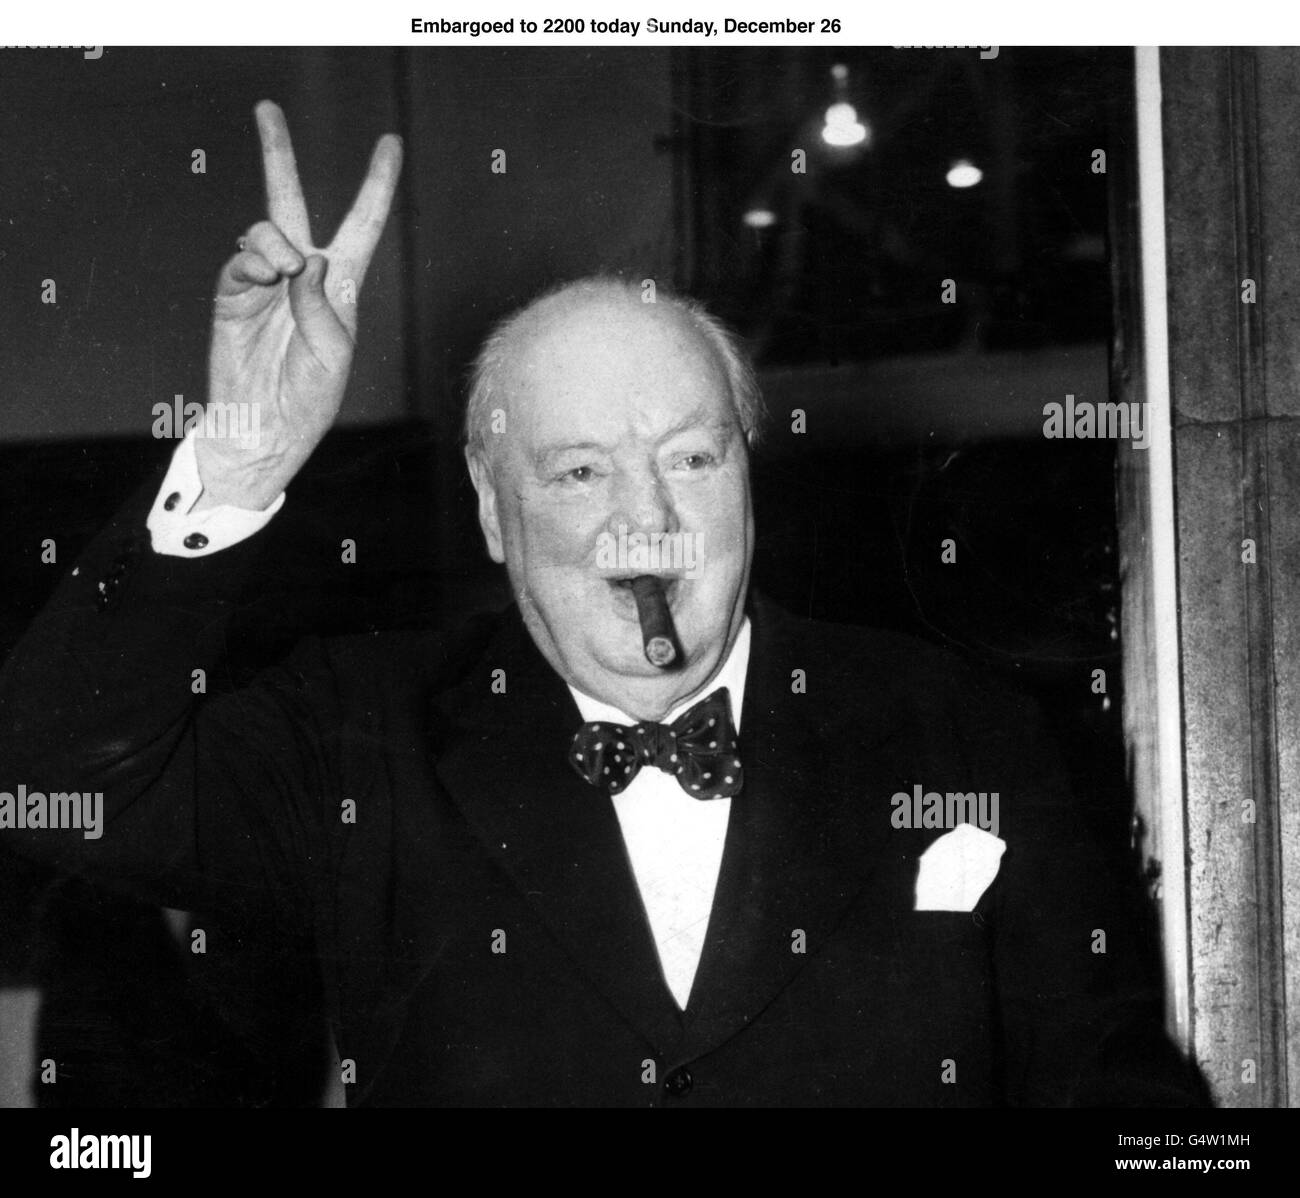 SIR WINSTON CHURCHILL EN DATE DU 17/9/54 . Le leader de la guerre Winston Churchill était le plus grand Premier ministre du XXe siècle, selon une nouvelle enquête compilée par BBC radio 4's The Westminster Hour, qui a classé les 19 premiers ministres de Lord Salisbury au tournant du siècle à John Major dans les années 1990, 26 décembre 1999. Churchill, dont le leadership et les discours ont inspiré la Grande-Bretagne pendant la Seconde Guerre mondiale, a battu le dernier premier ministre libéral David Lloyd George en deuxième place et le successeur de Churchill, le Labour's Clement Attlee, en troisième. Voir PA Story POLITICS Churchill. Photo PA. Banque D'Images